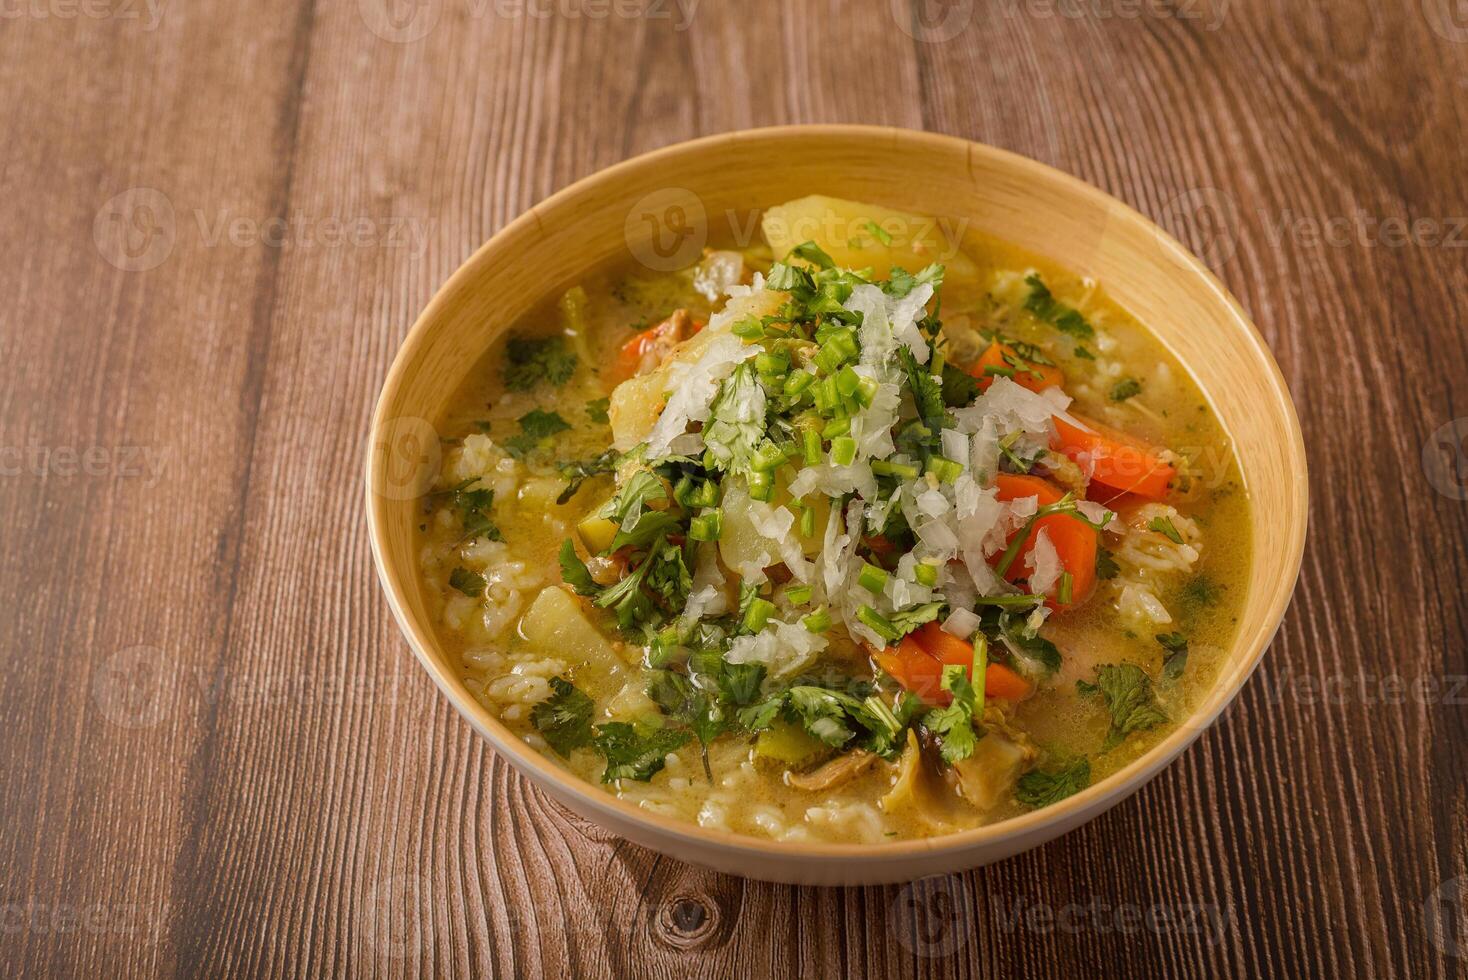 kip soep met groenten in een diep kom Aan een houten tafel. foto